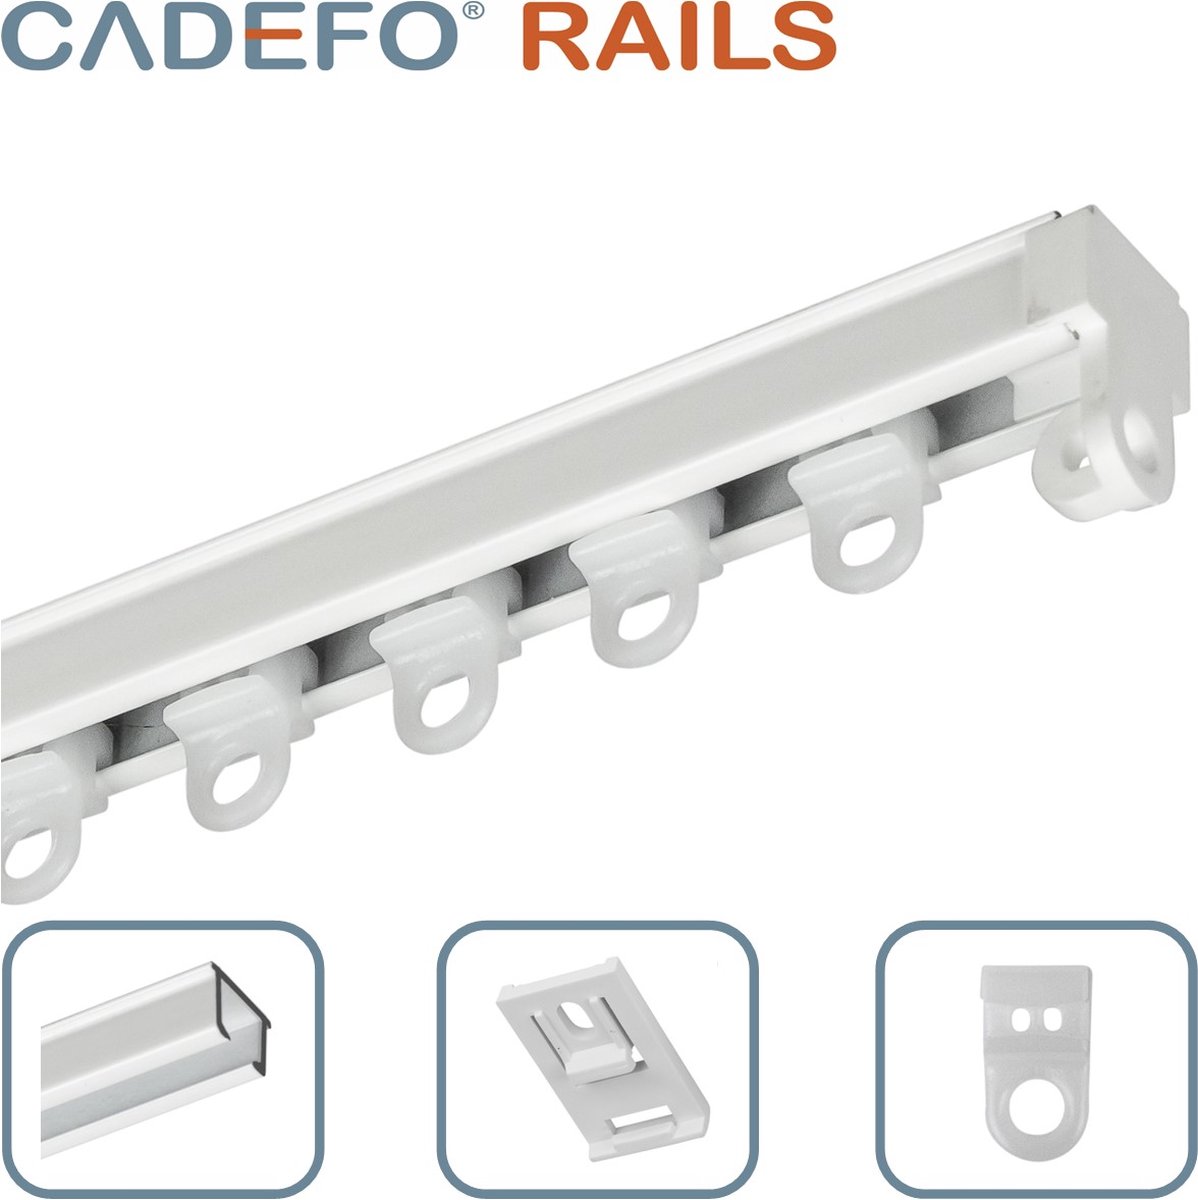 CADEFO RAILS (101 - 150 cm) Gordijnrails - Compleet op maat! - UIT 1 STUK - Leverbaar tot 6 meter - Plafondbevestiging - Lengte 117 cm